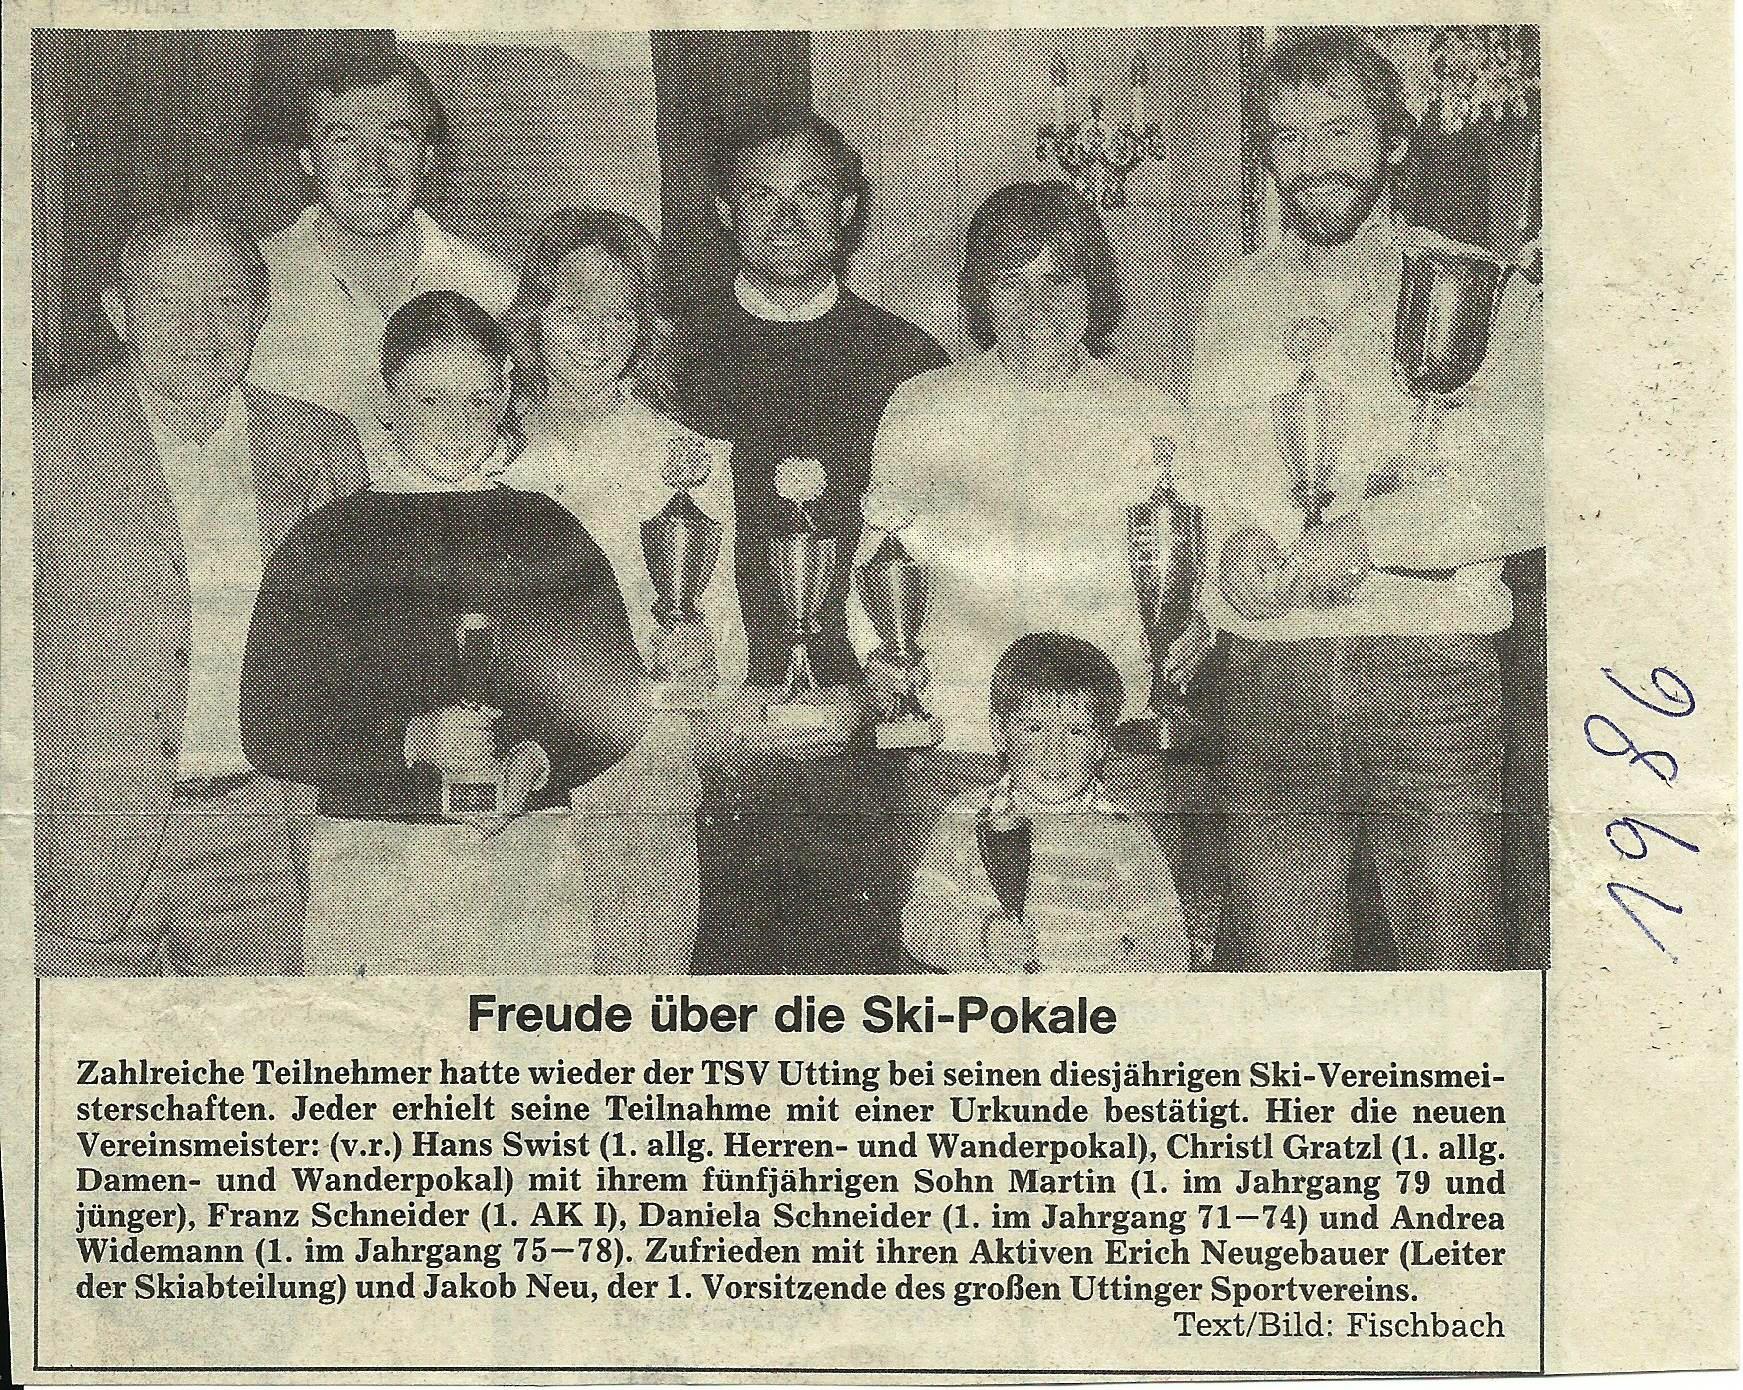 TSV Utting - 1986 Uttinger Skimeisterschaft